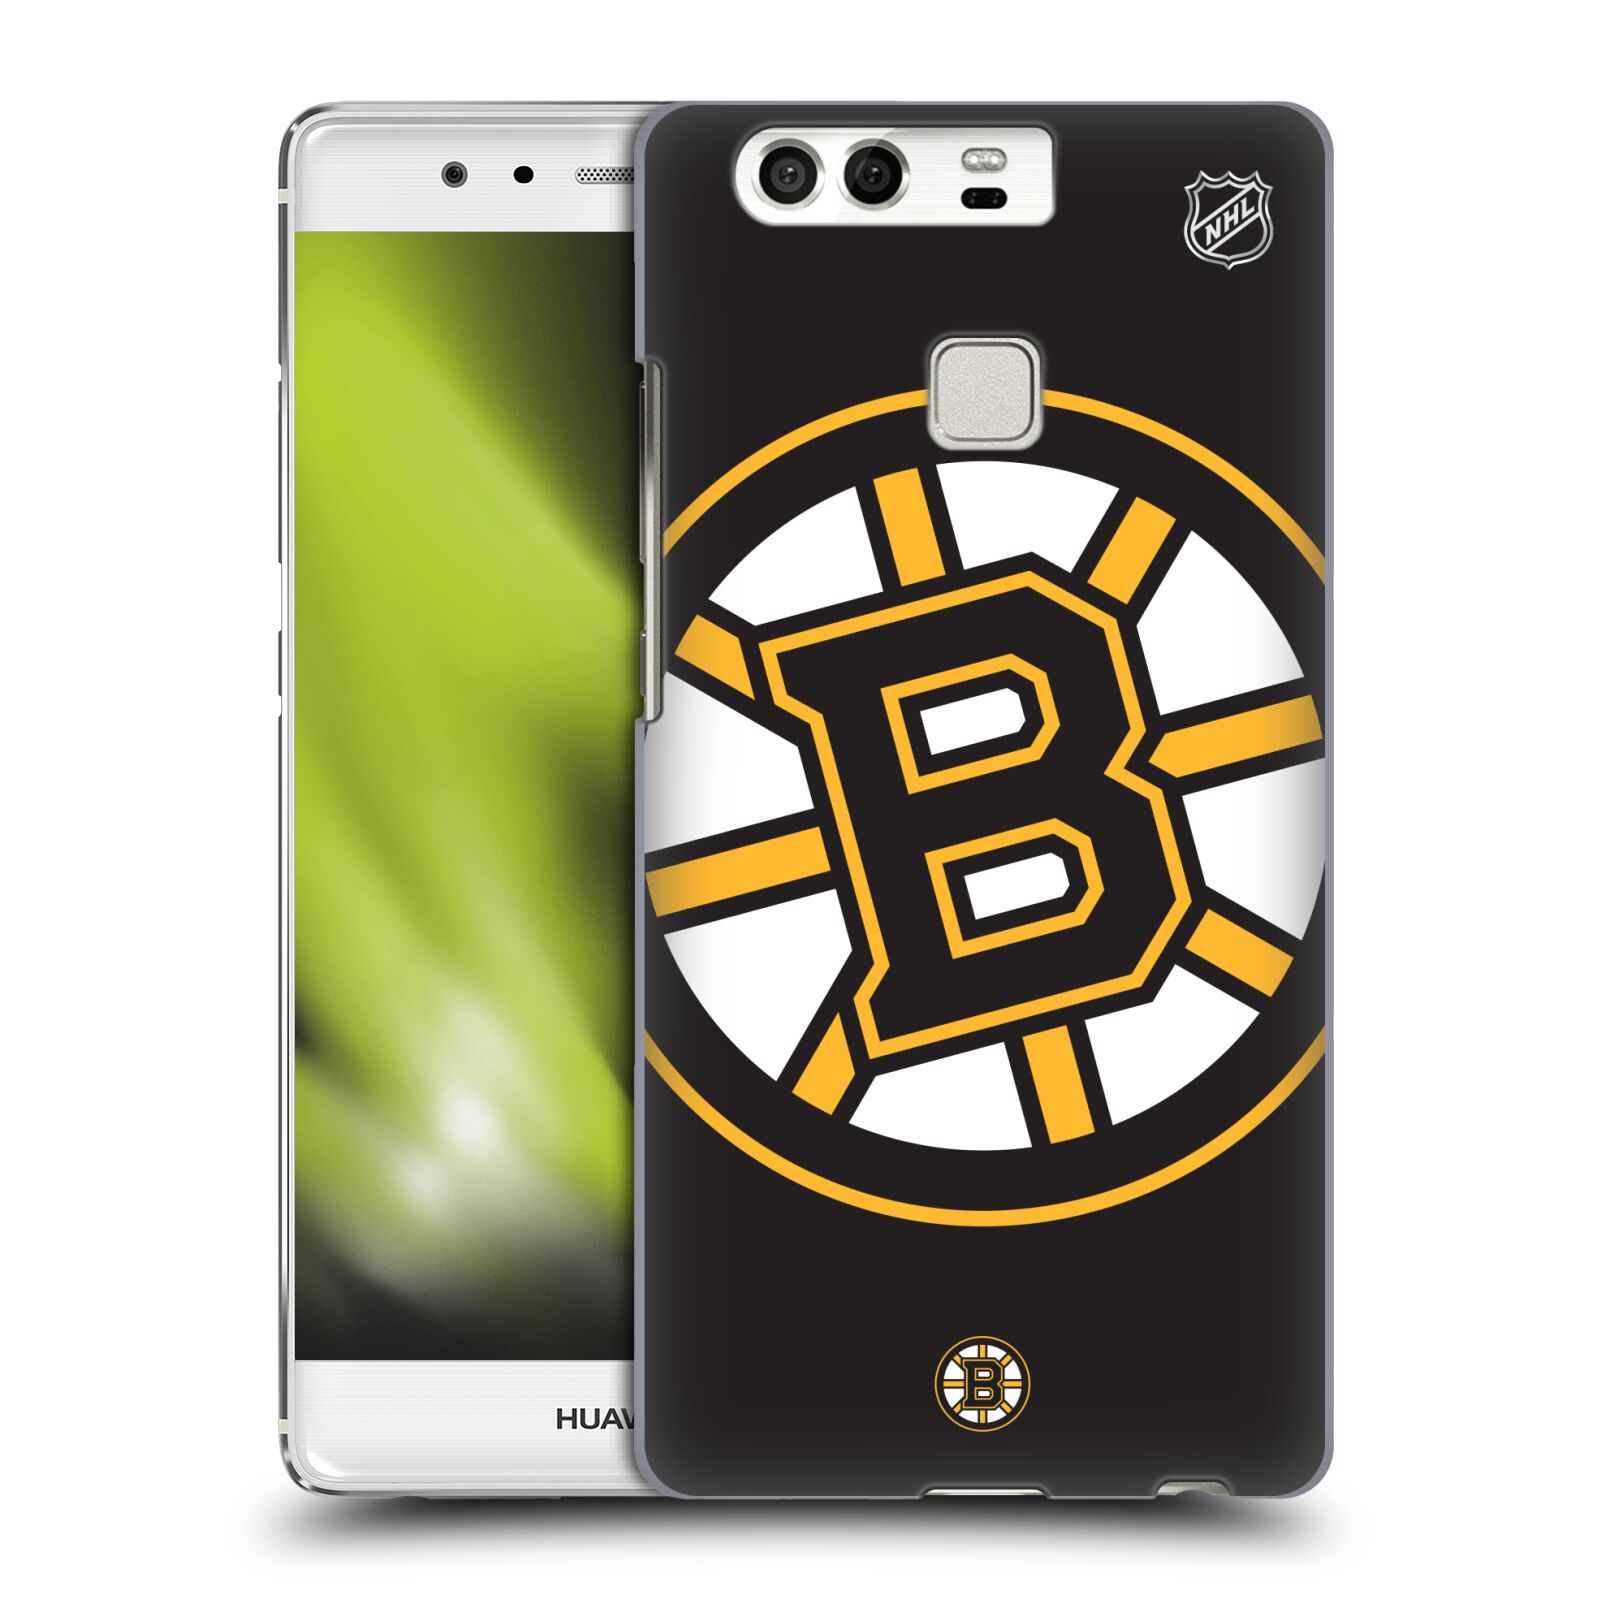 Pouzdro na mobil Huawei P9 / P9 DUAL SIM - HEAD CASE - Hokej NHL - Boston Bruins - velký znak